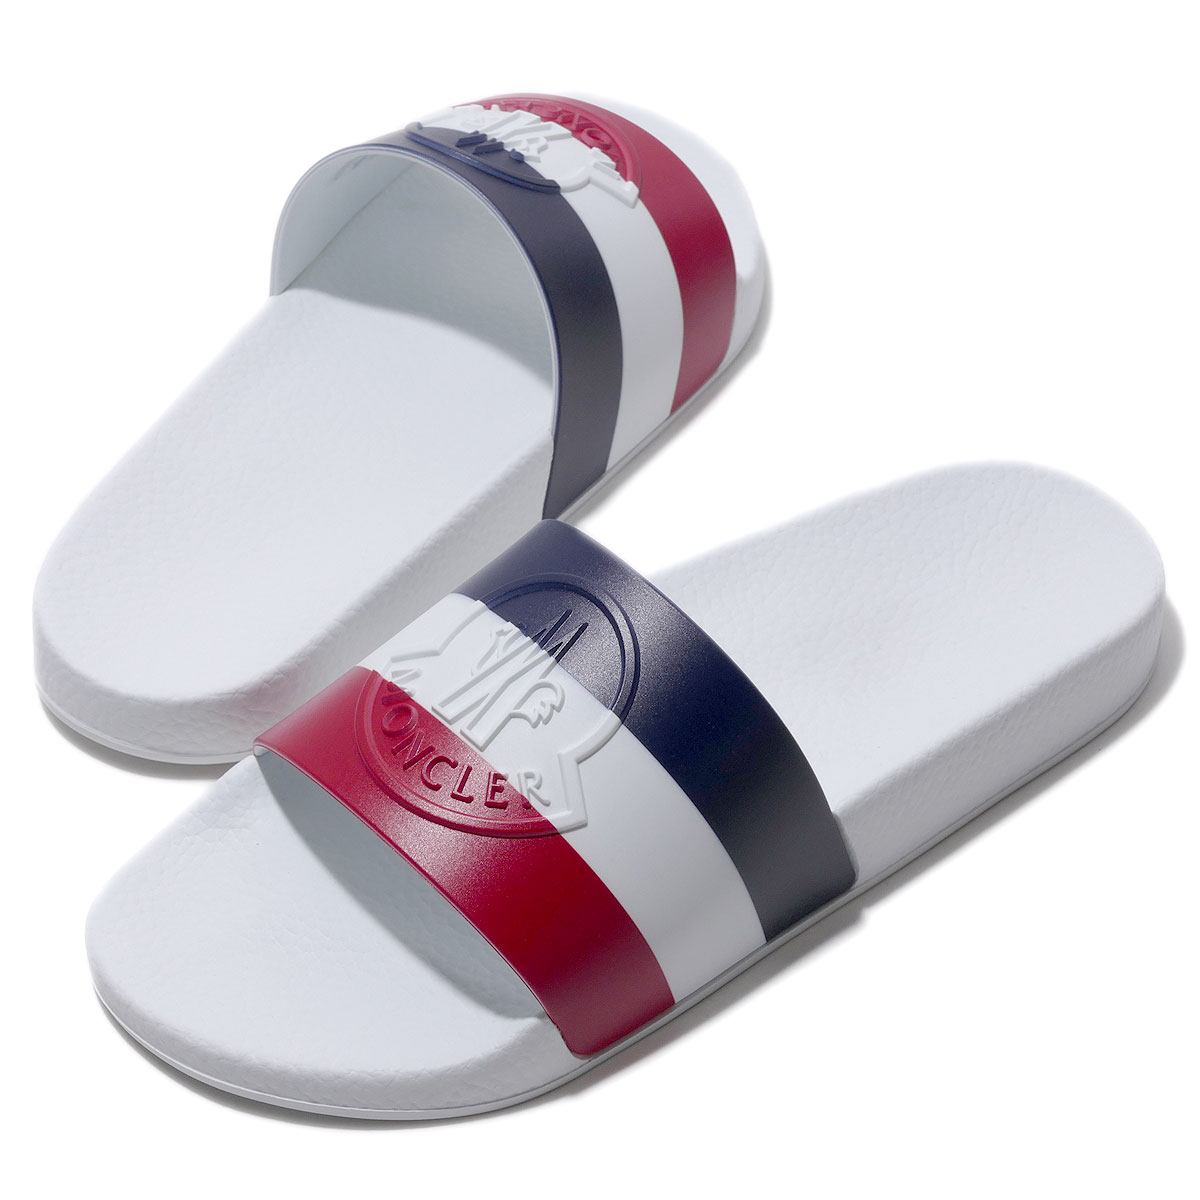 モンクレール サンダル BASILE 002ホワイト MONCLER メンズ イタリア製 靴 ブランド ギフト[0304]